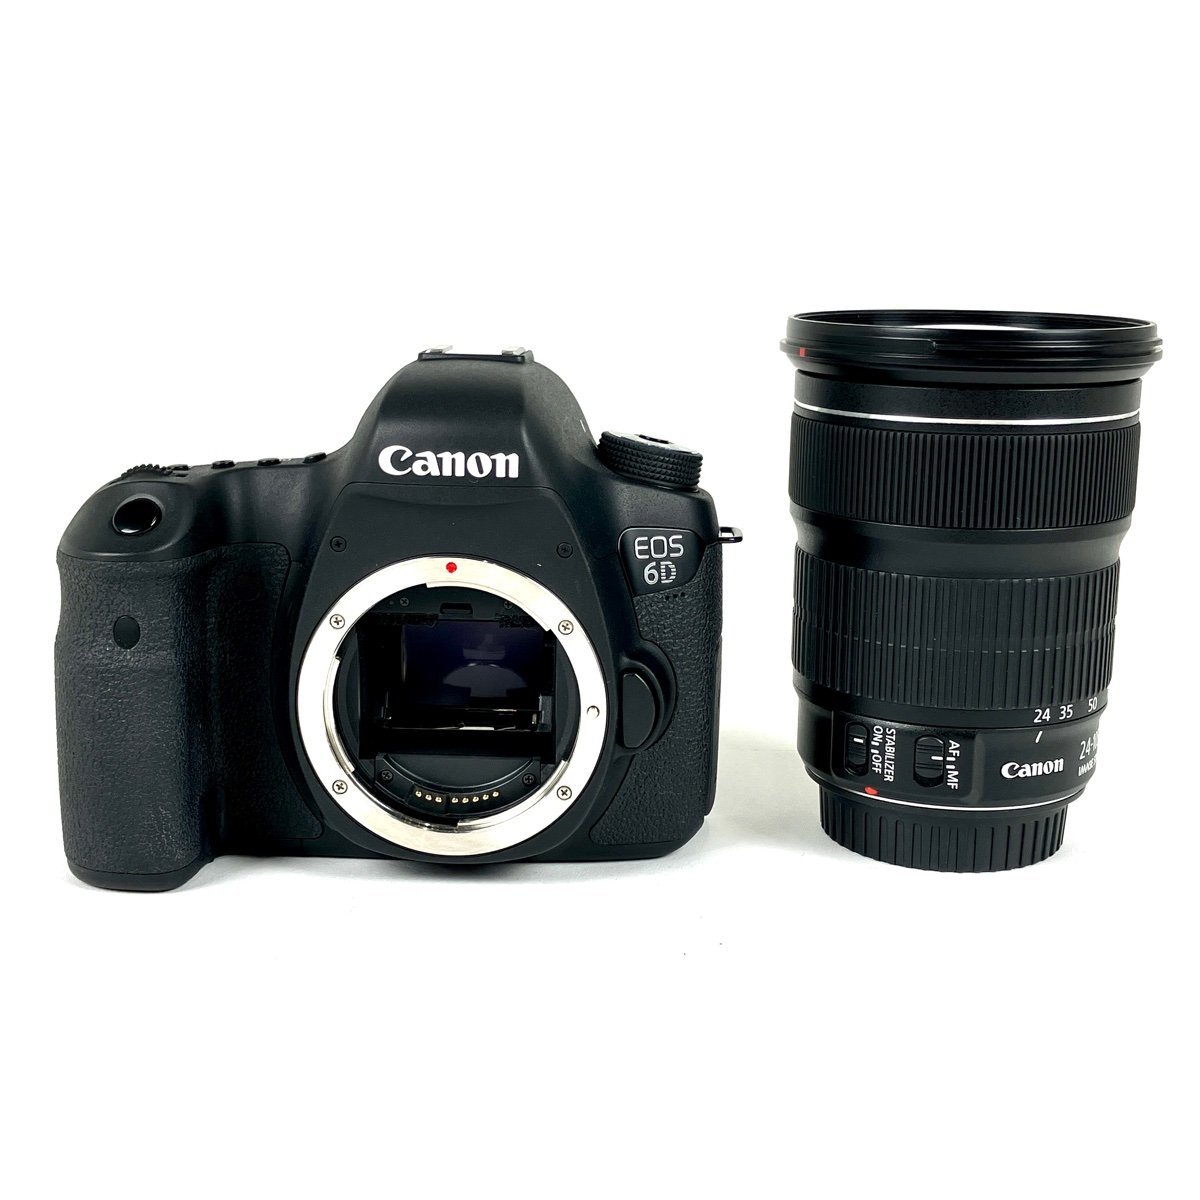 キヤノン Canon EOS 6D + EF 24-105mm F3.5-5.6 IS STM デジタル 一眼